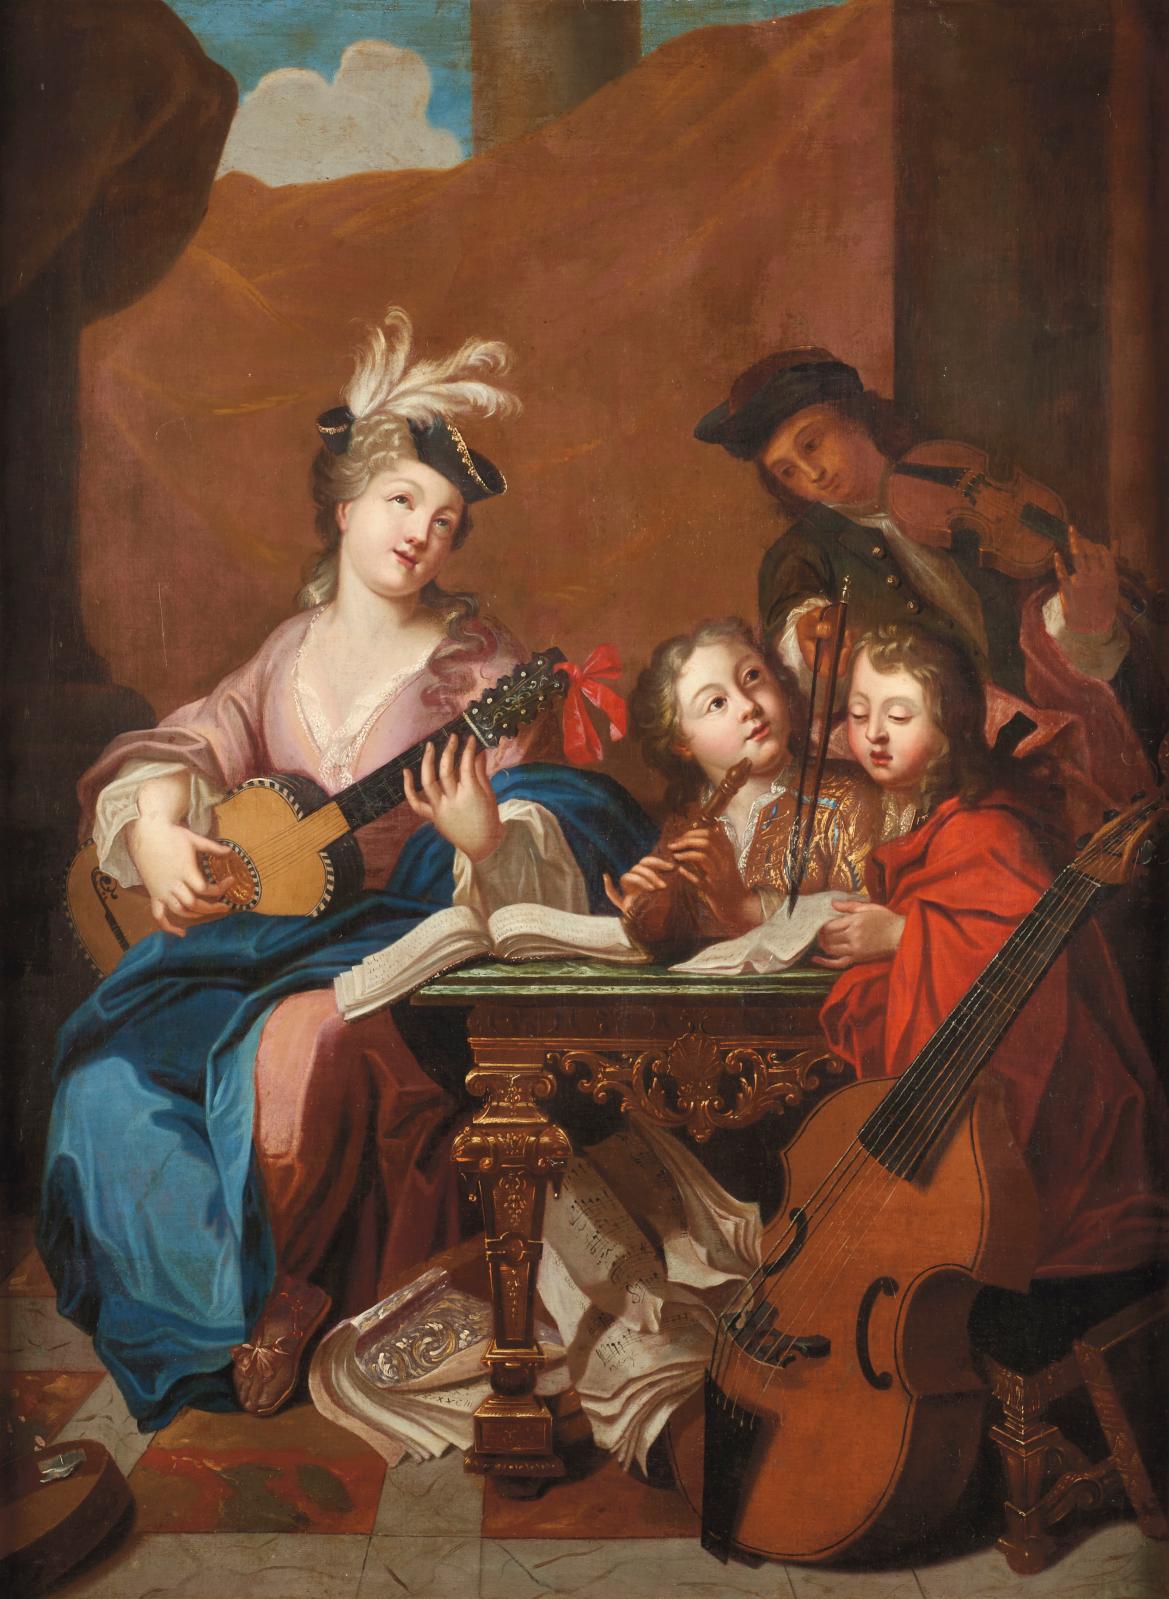 École française du XVIIIe siècle, suiveur de Jean-Baptiste Santerre (1651-1717), Le Concert, huile sur toile, 128 x 94 cm (détail). Estima